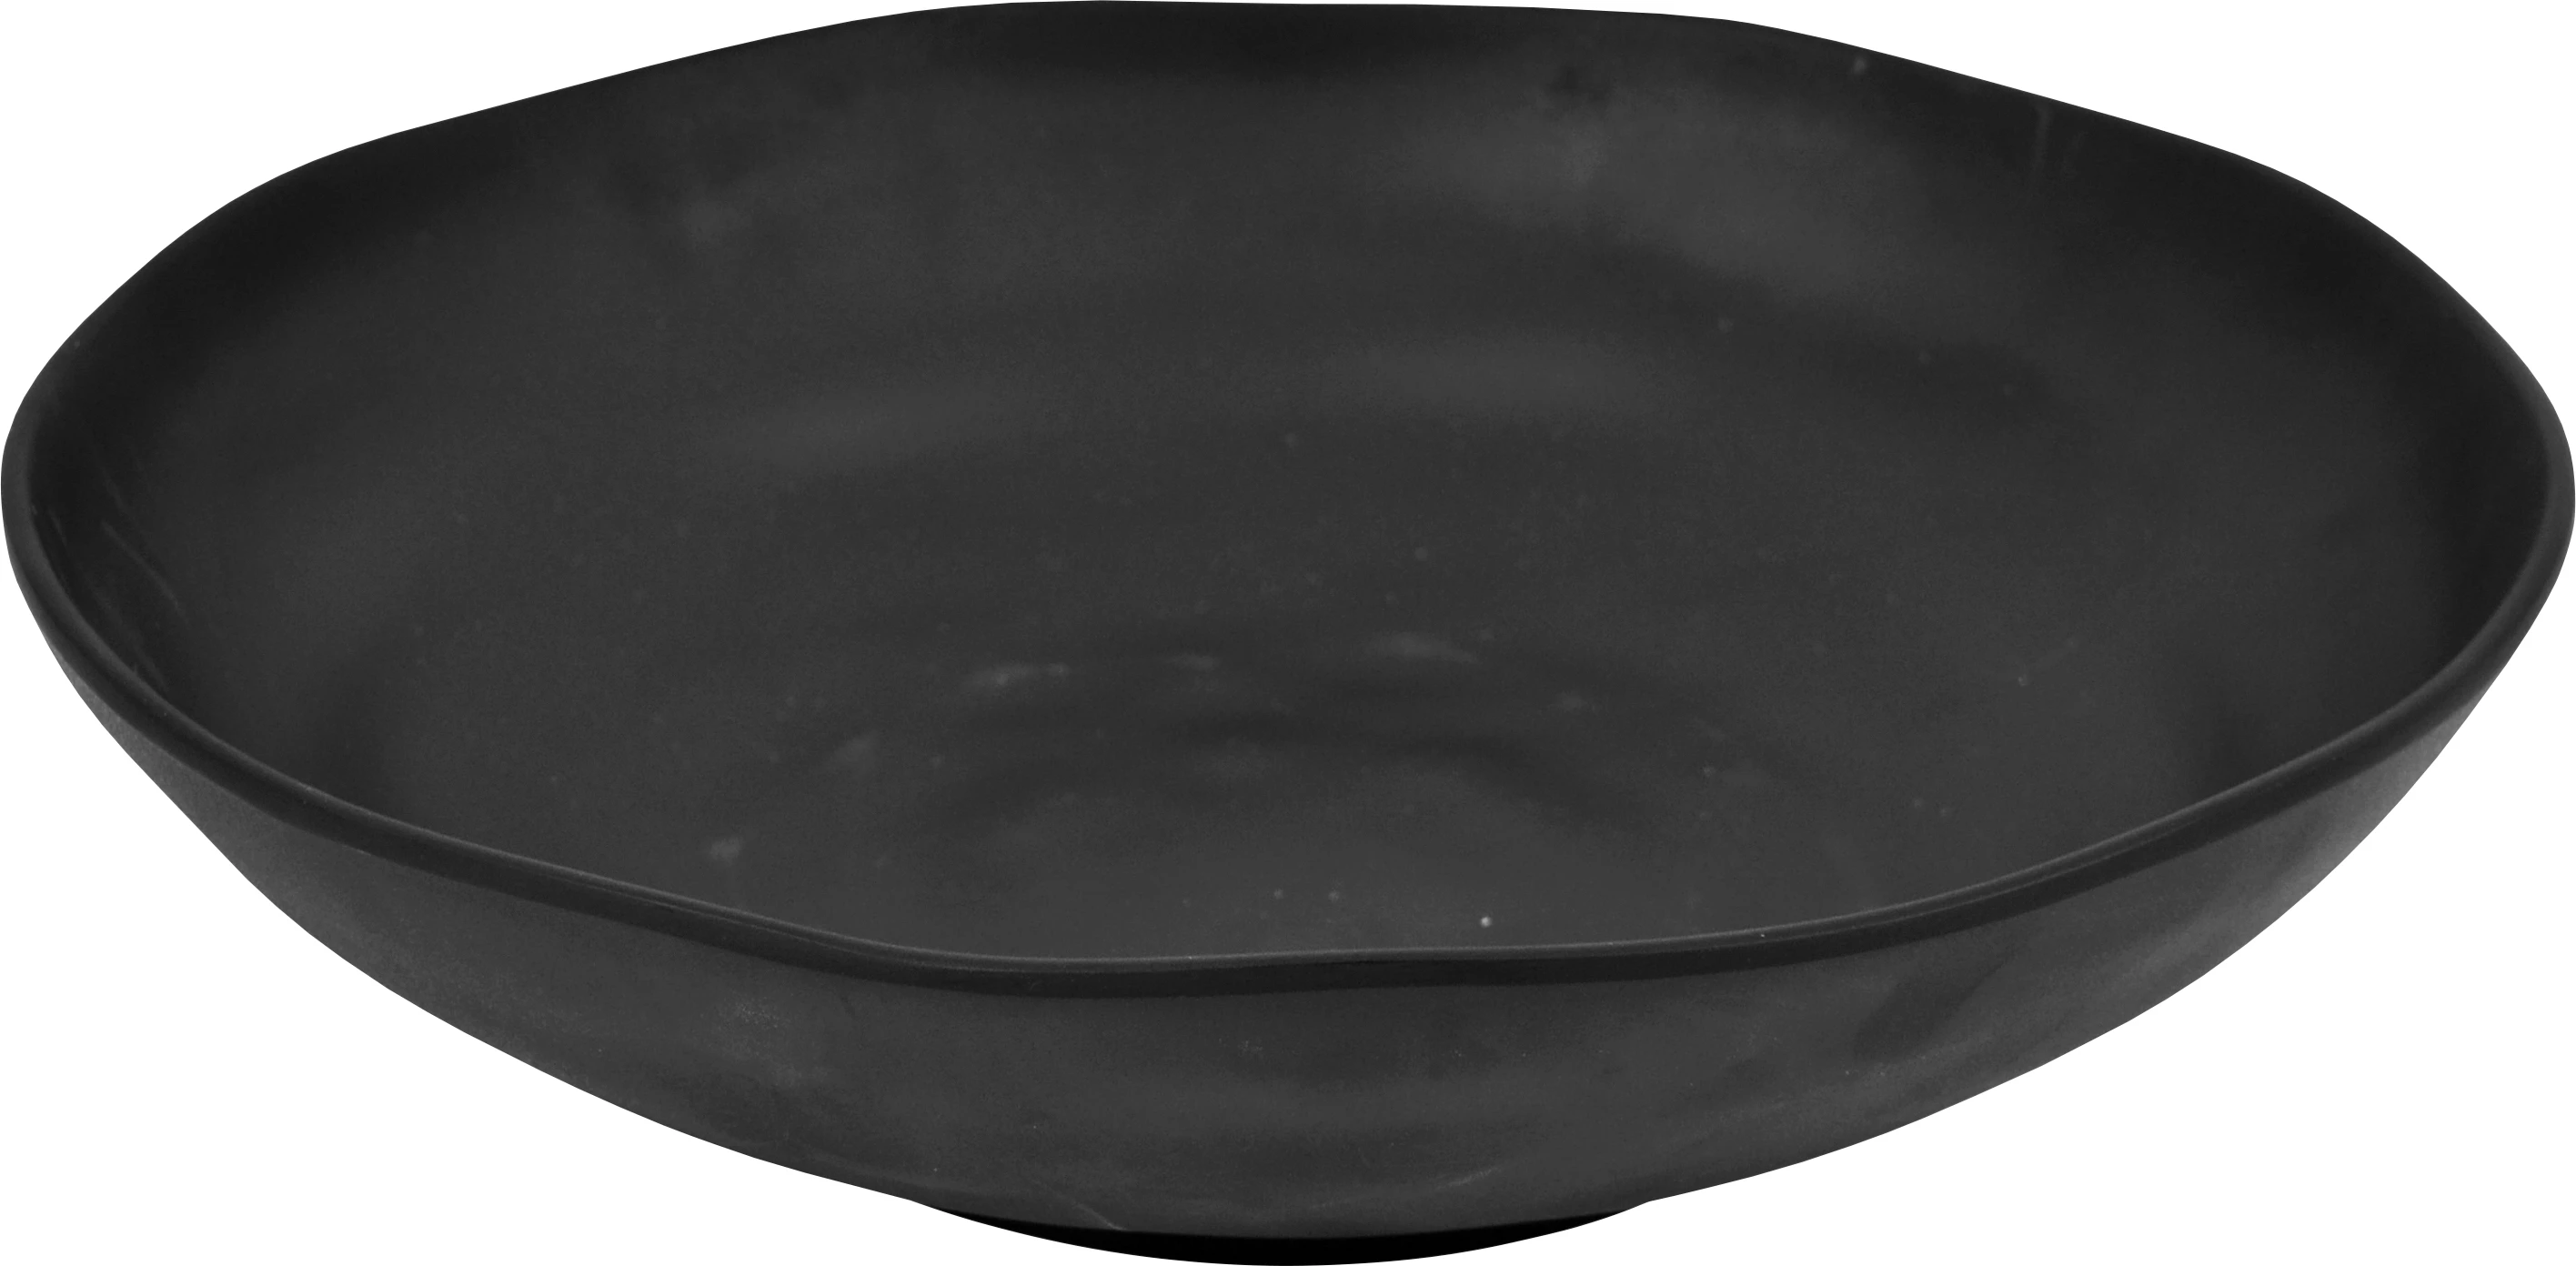 Dalebrook Pigment skål, sort, 400 cl, ø33,8 cm